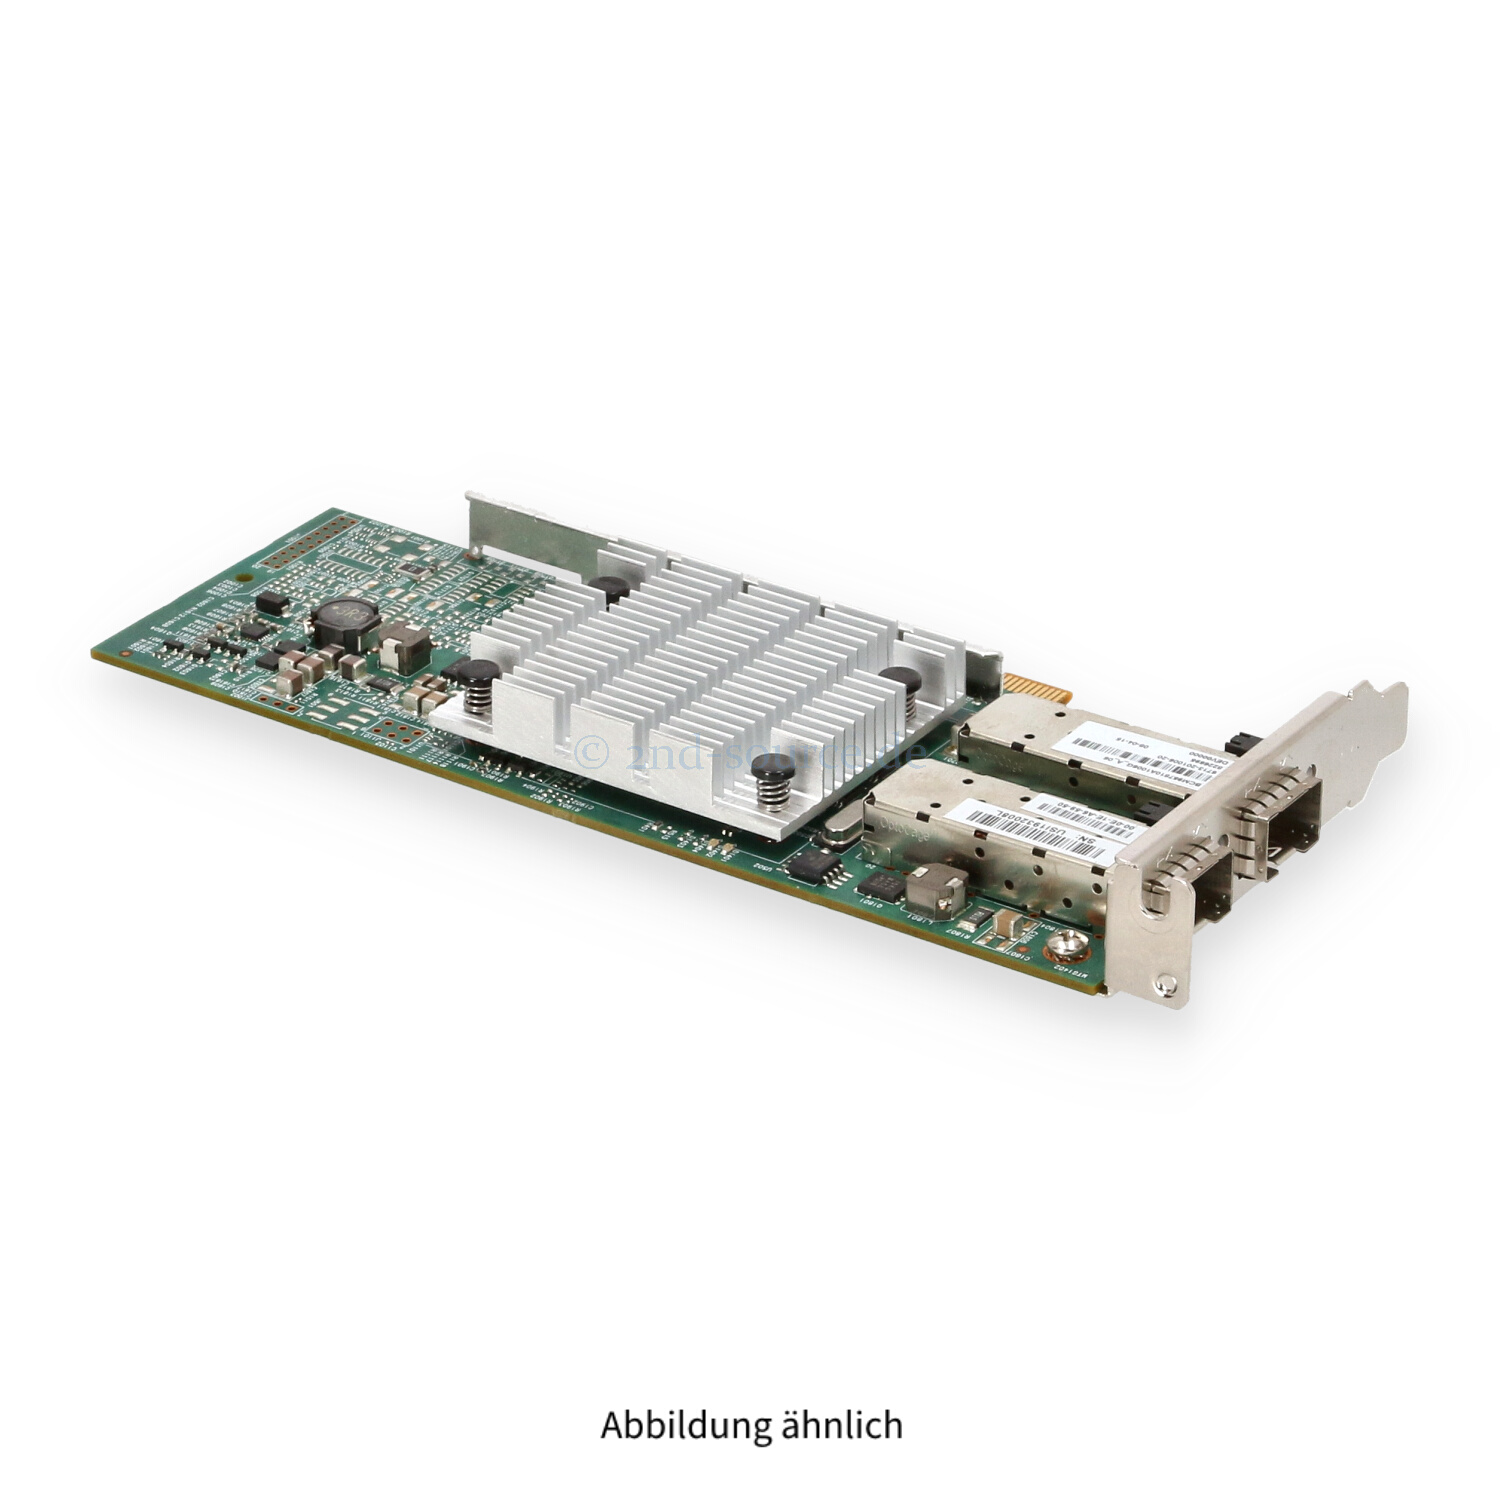 EMC Broadcom 957810A 2x 10GB SFP+ PCIe x8 Server Ethernet Adapter Low Profile 6713-201006-20